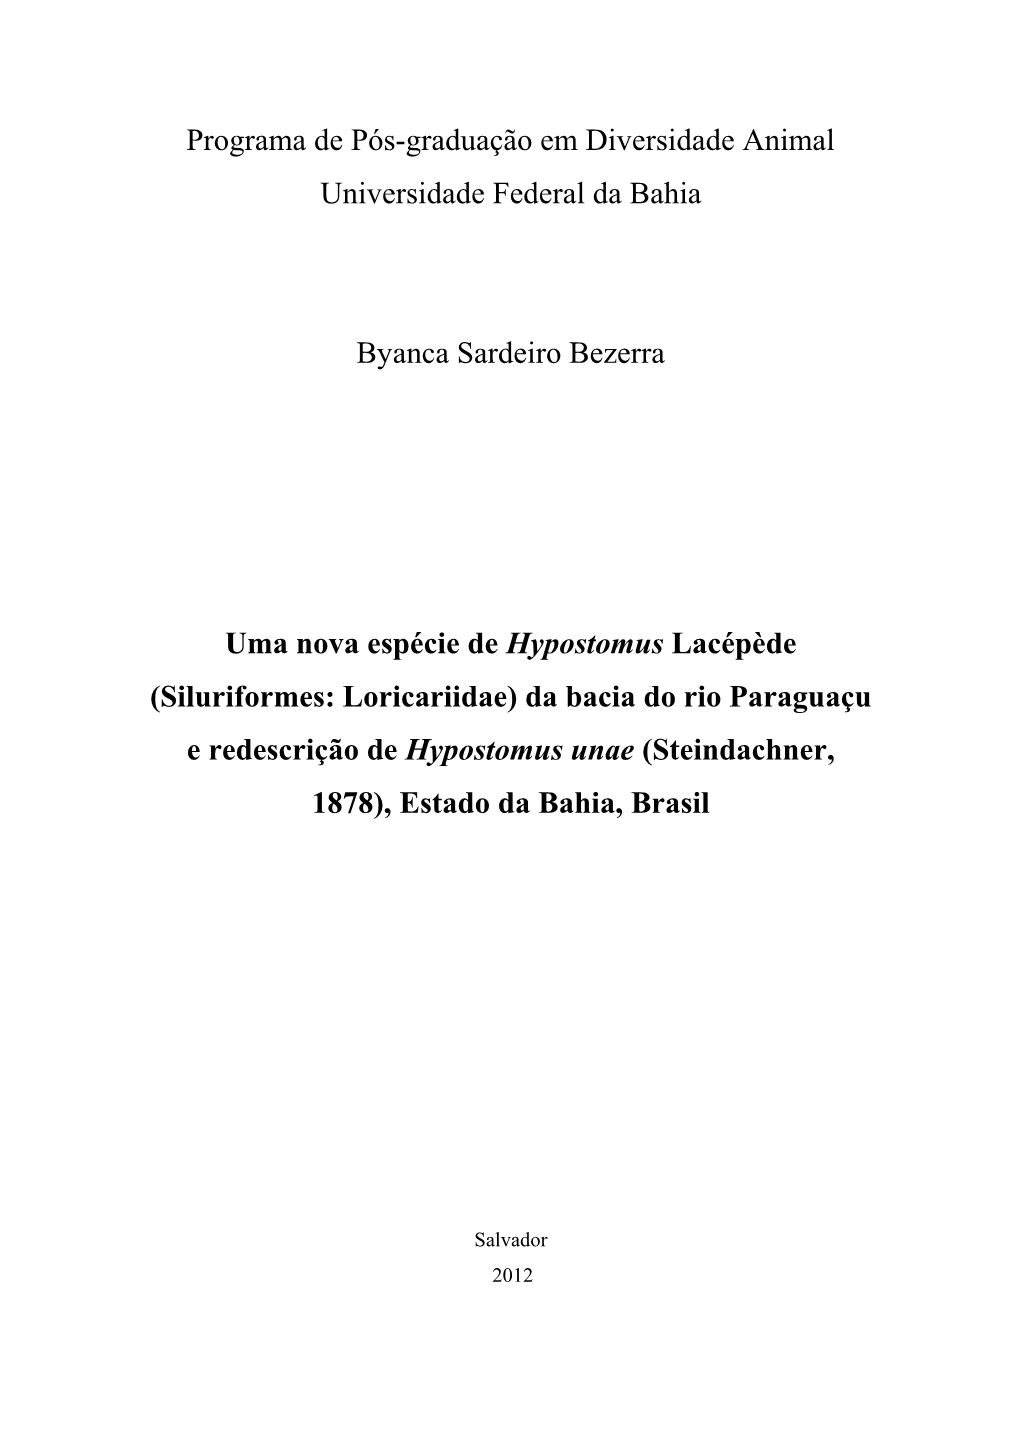 Siluriformes: Loricariidae) Da Bacia Do Rio Paraguaçu E Redescrição De Hypostomus Unae (Steindachner, 1878), Estado Da Bahia, Brasil